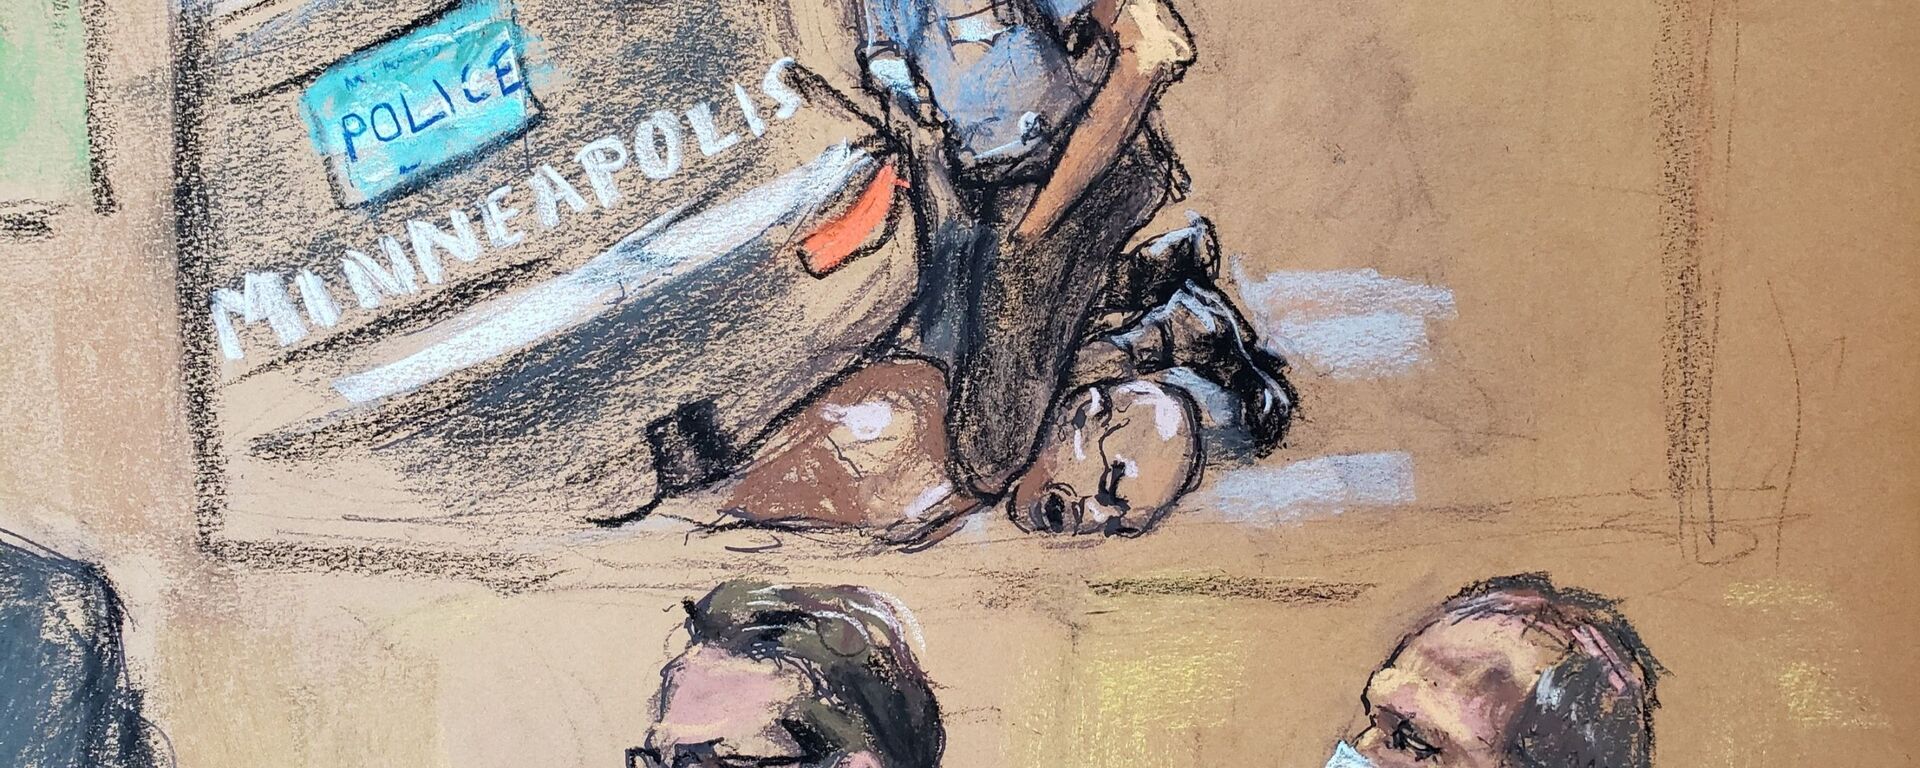 Mahkeme çizimiyle George Floyd davasında boğularak öldürülmesinin videosu gösterilirken avukat Eric Nelson ile müvekkili olan eski polis memuru Derek Chauvin (sağda) - Sputnik Türkiye, 1920, 31.03.2021